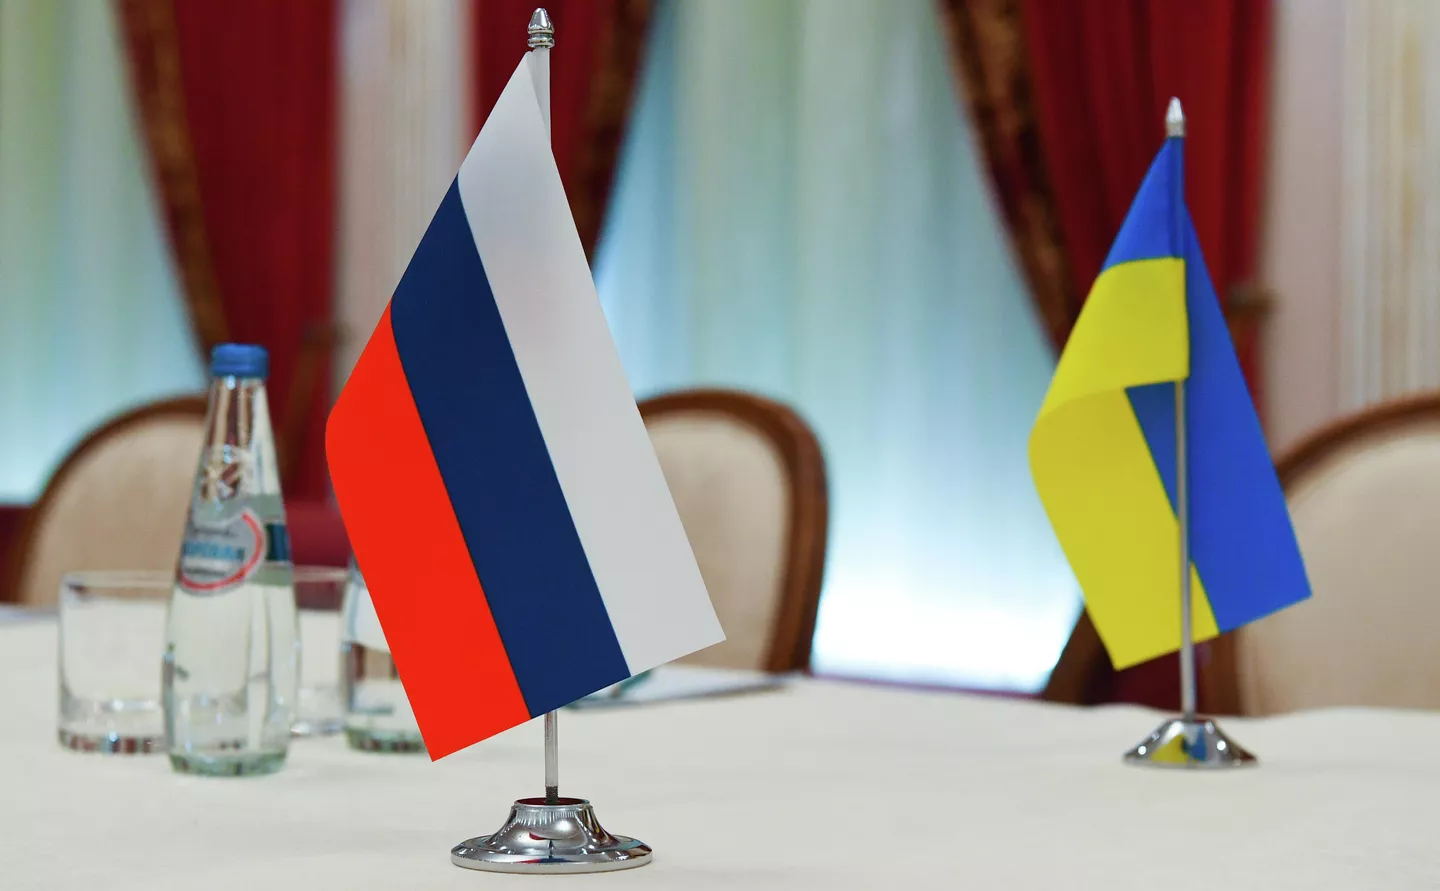 Moscú critica organización de consultas sobre Ucrania sin inclusión de Rusia